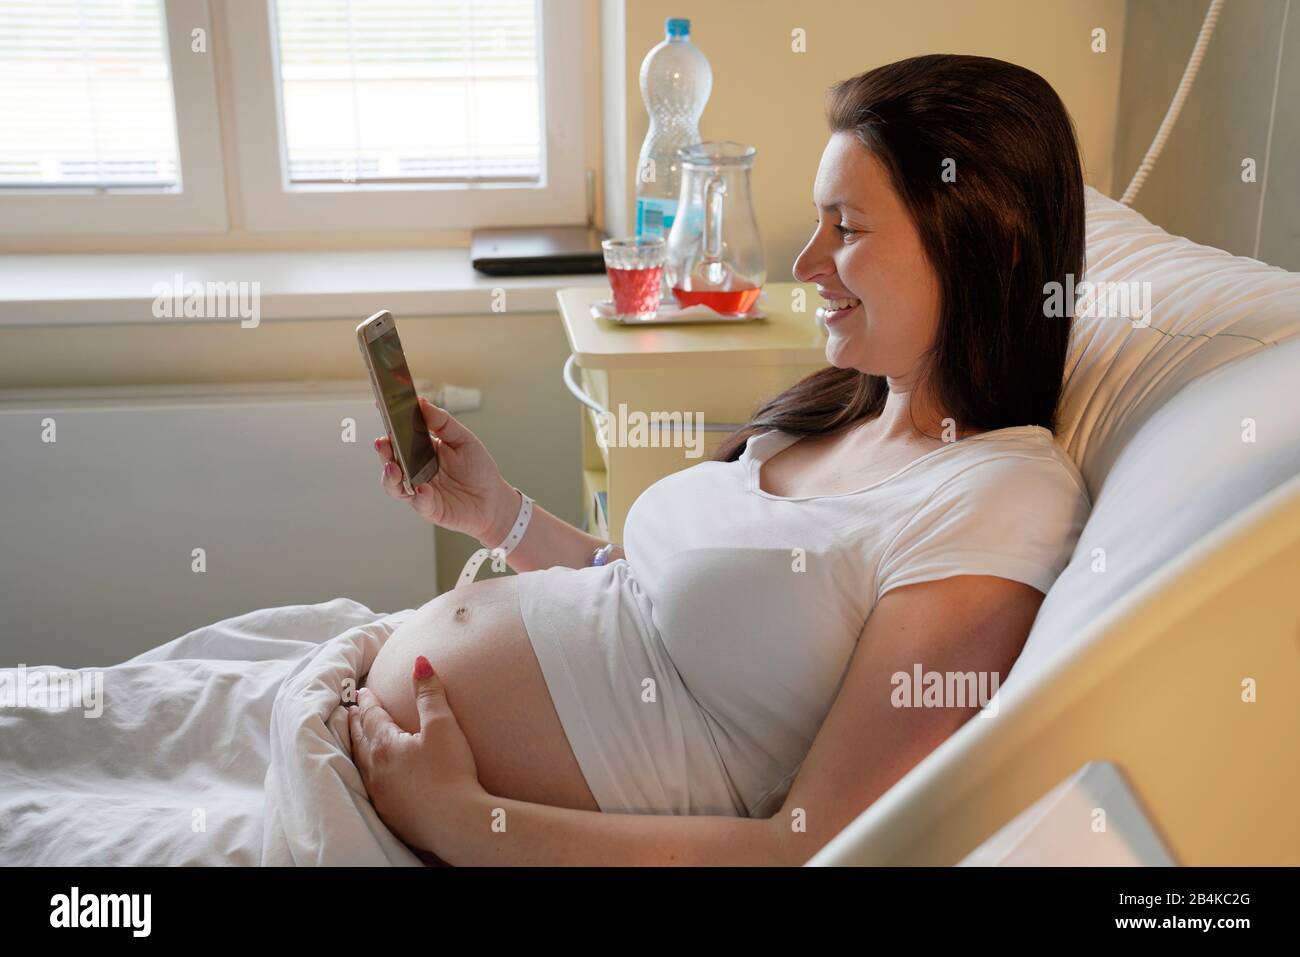 Hochriskige Schwangerschaft, schwangere Frau, die im Krankenhaus auf dem Mutterschaftsbett liegt und auf ihrem Handy sucht Stockfoto